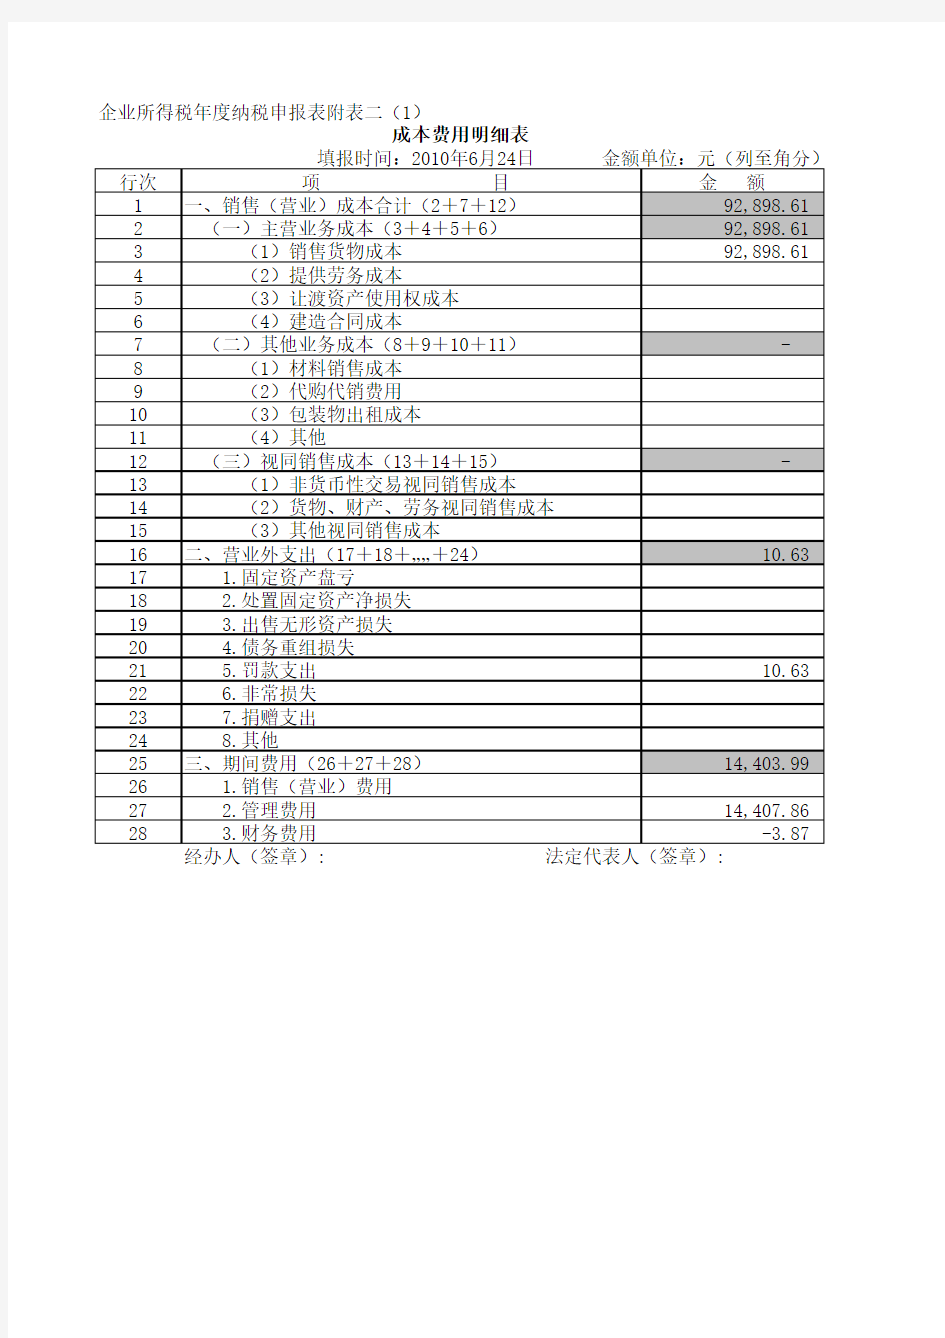 中华人民共和国企业所得税年度纳税申报表(A类)